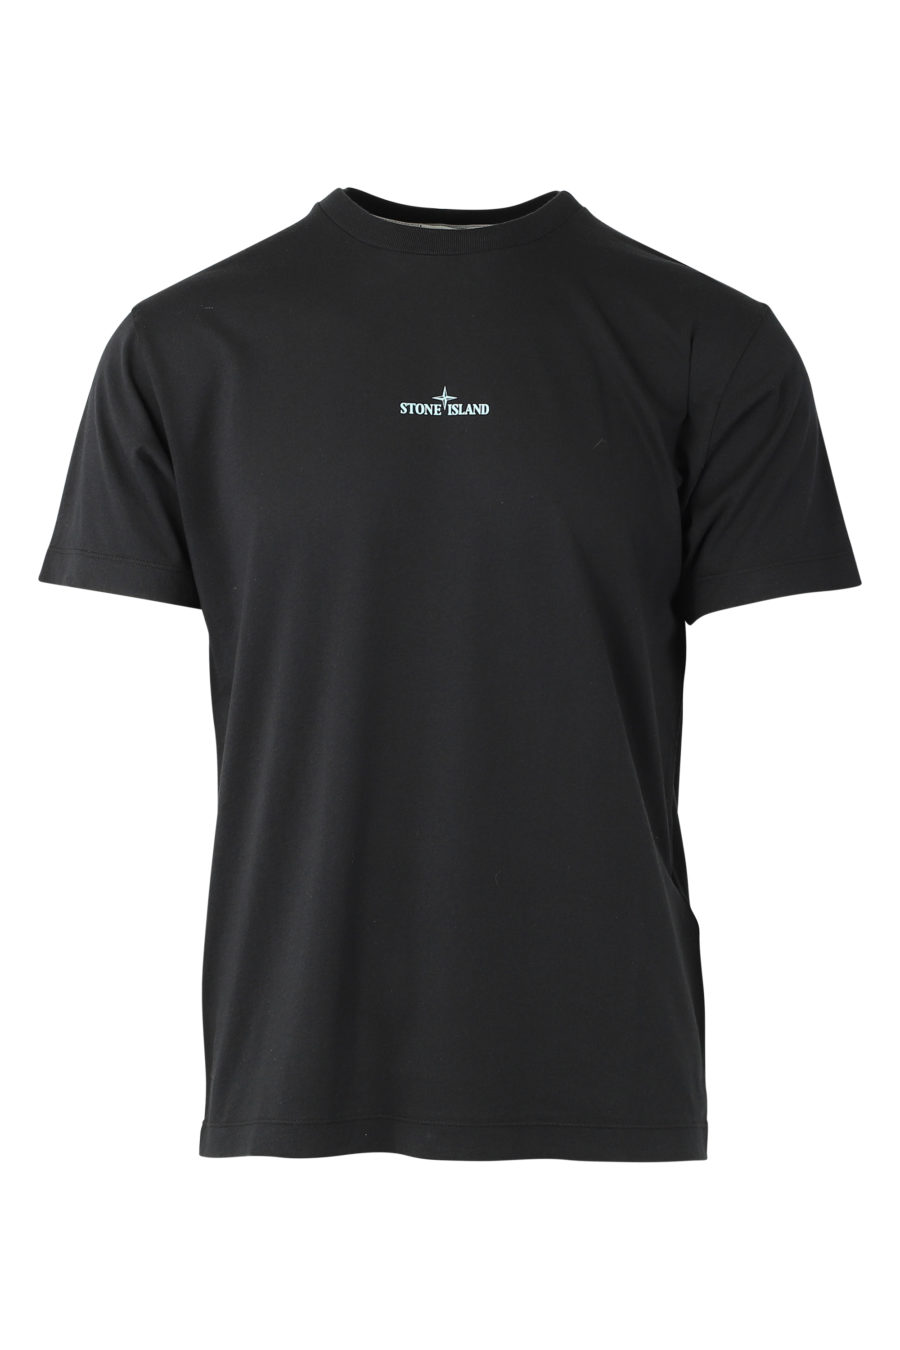 Camiseta negra con logotipo multicolor detrás - IMG 9324